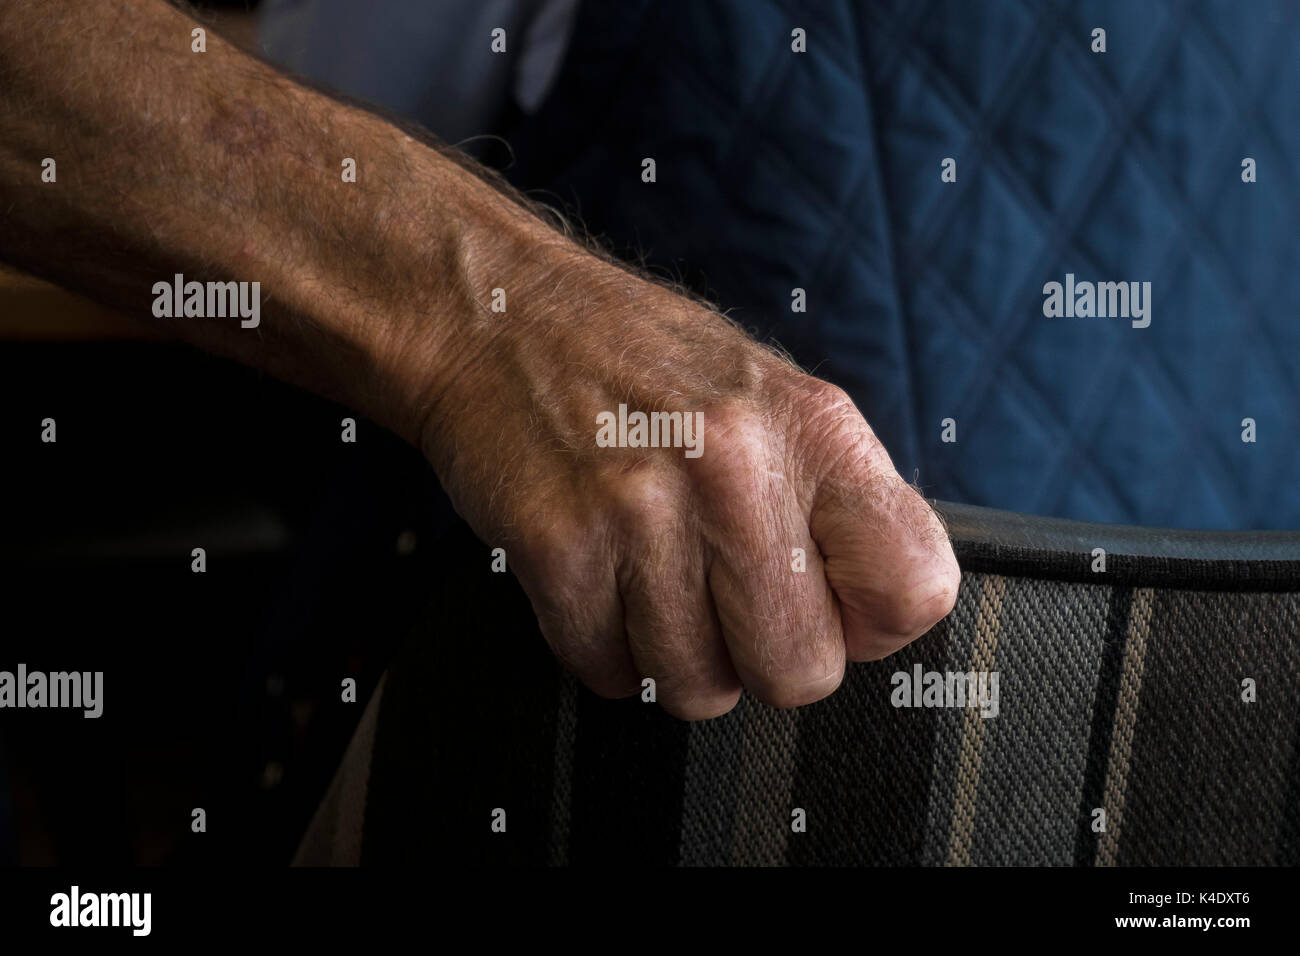 Età - una vista ingrandita della mano di una persona anziana saldamente la presa sullo schienale di una sedia. Foto Stock